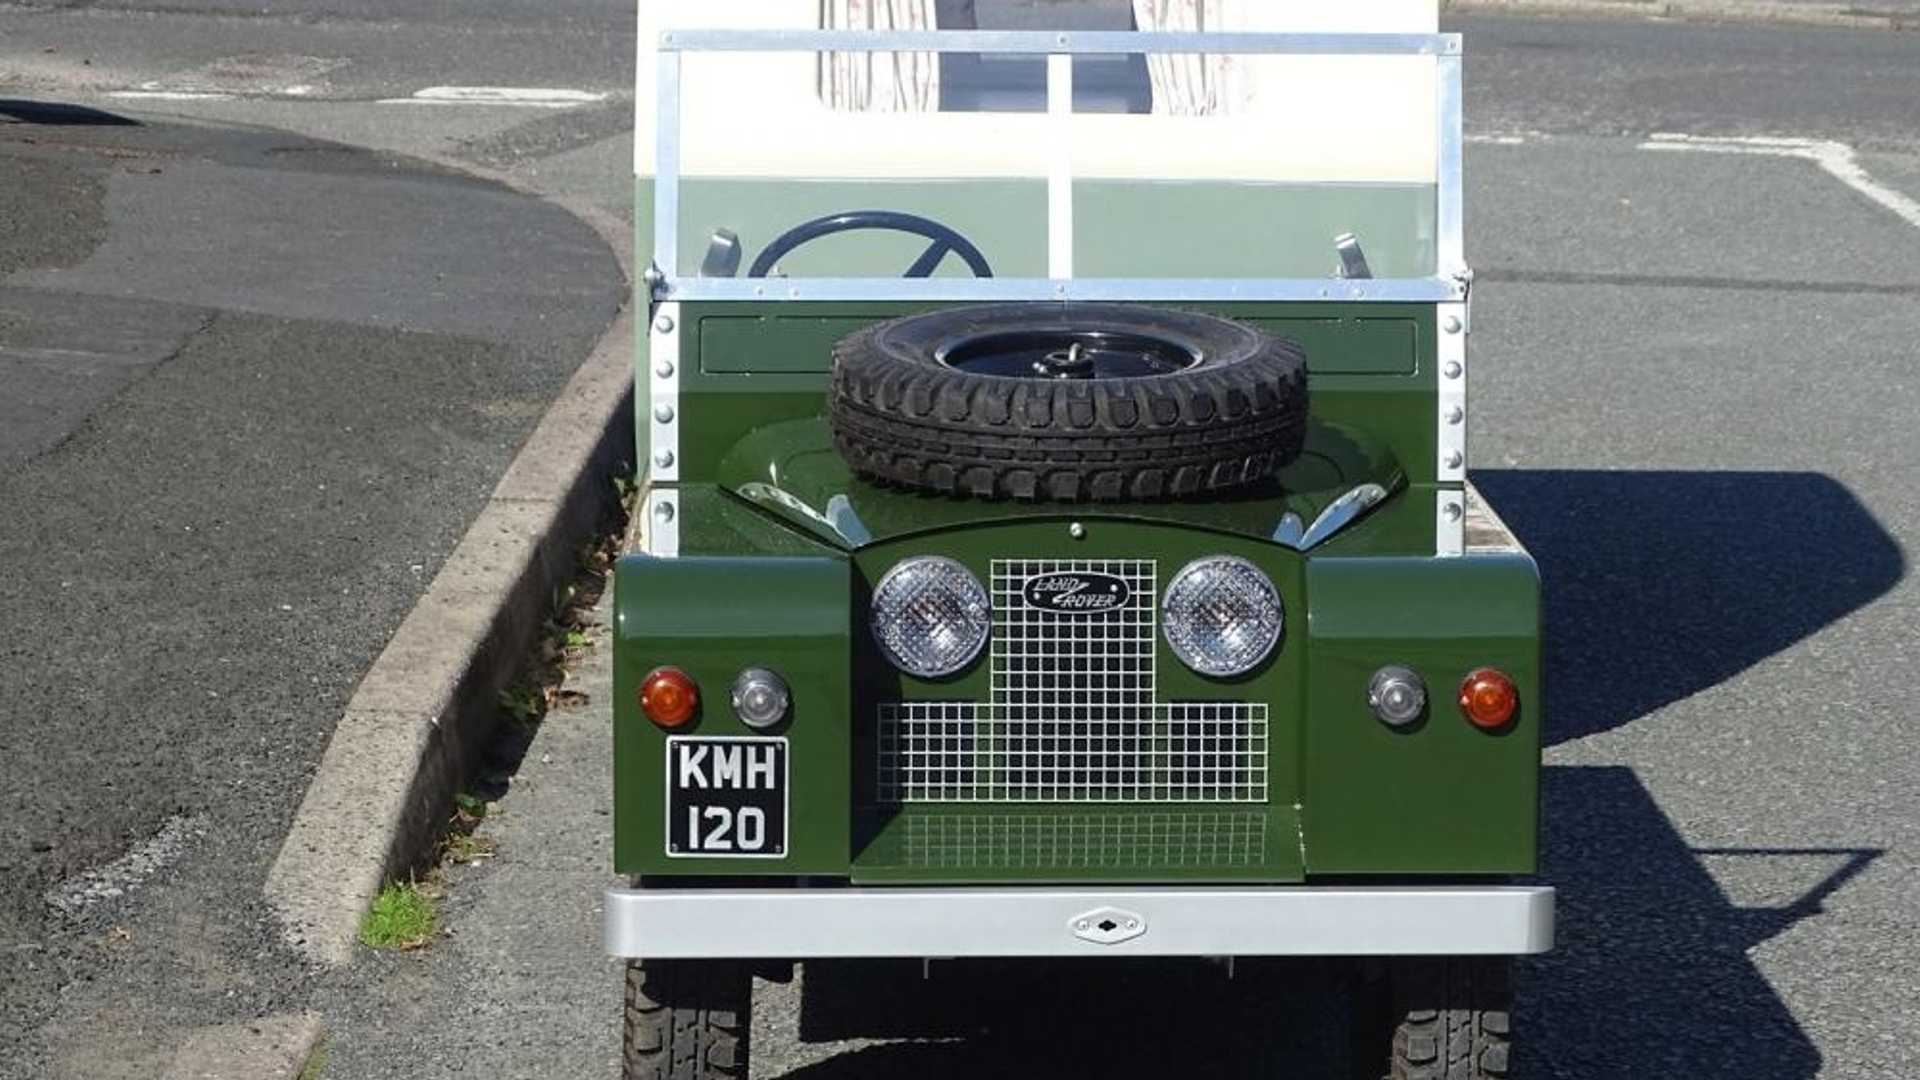 Conheça o mini Land Rover com caravana que pode ser seu